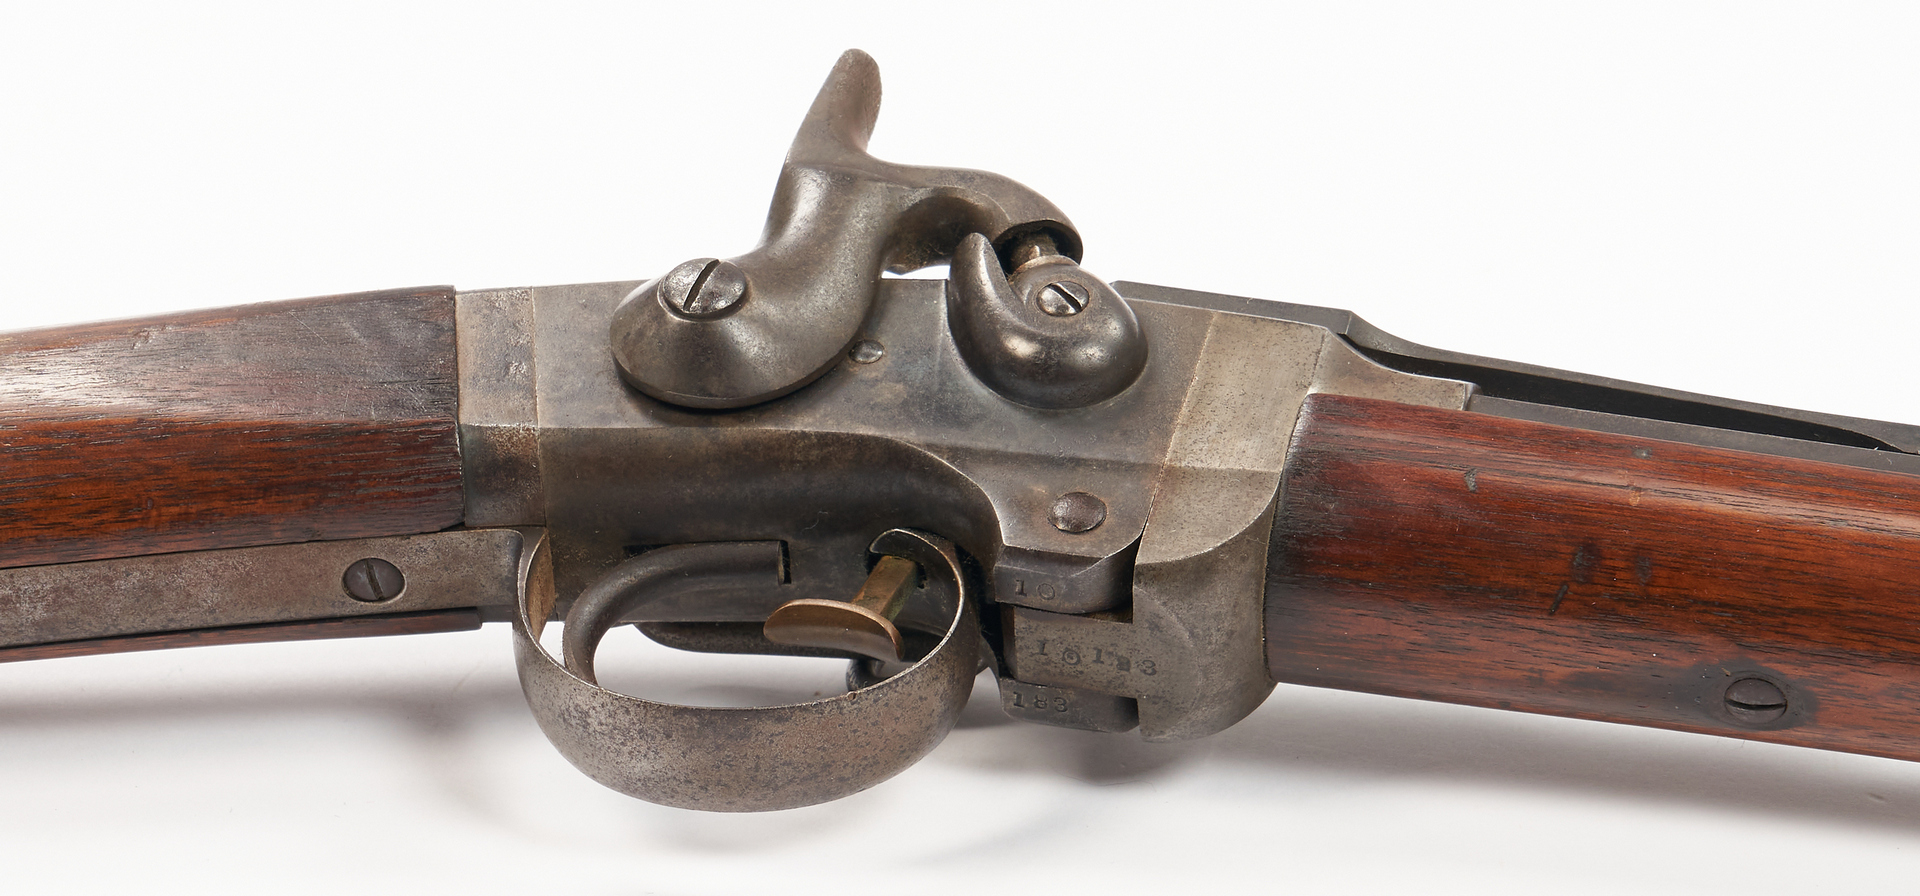 Lot 701: Civil War Poultney & Trimble Smith's Patent Carbine, .50 cal.